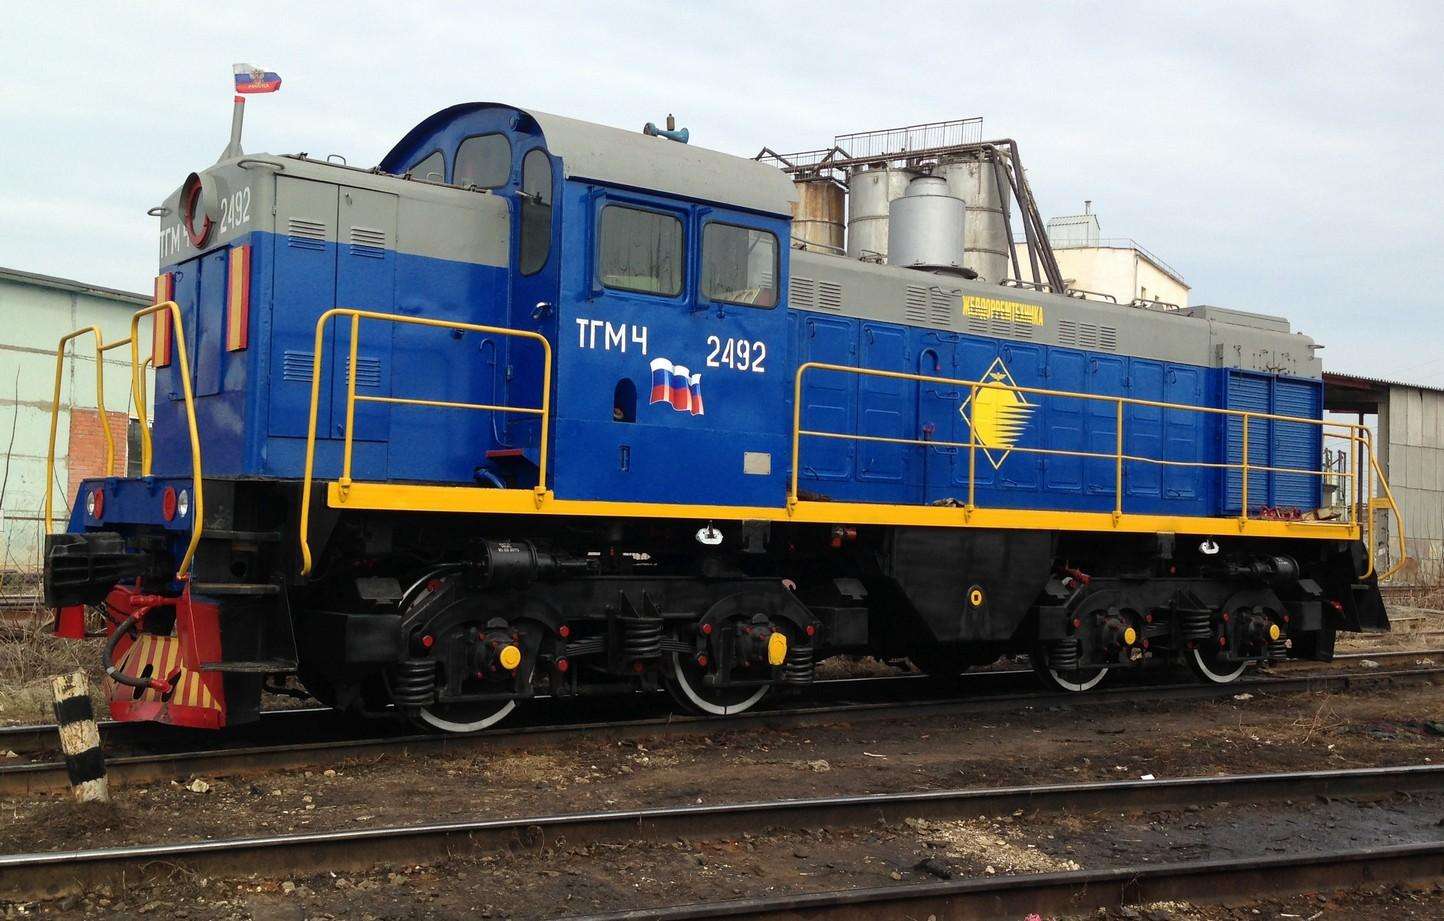 locomotiva diesel de manobra TGM4-2492 puzzle online